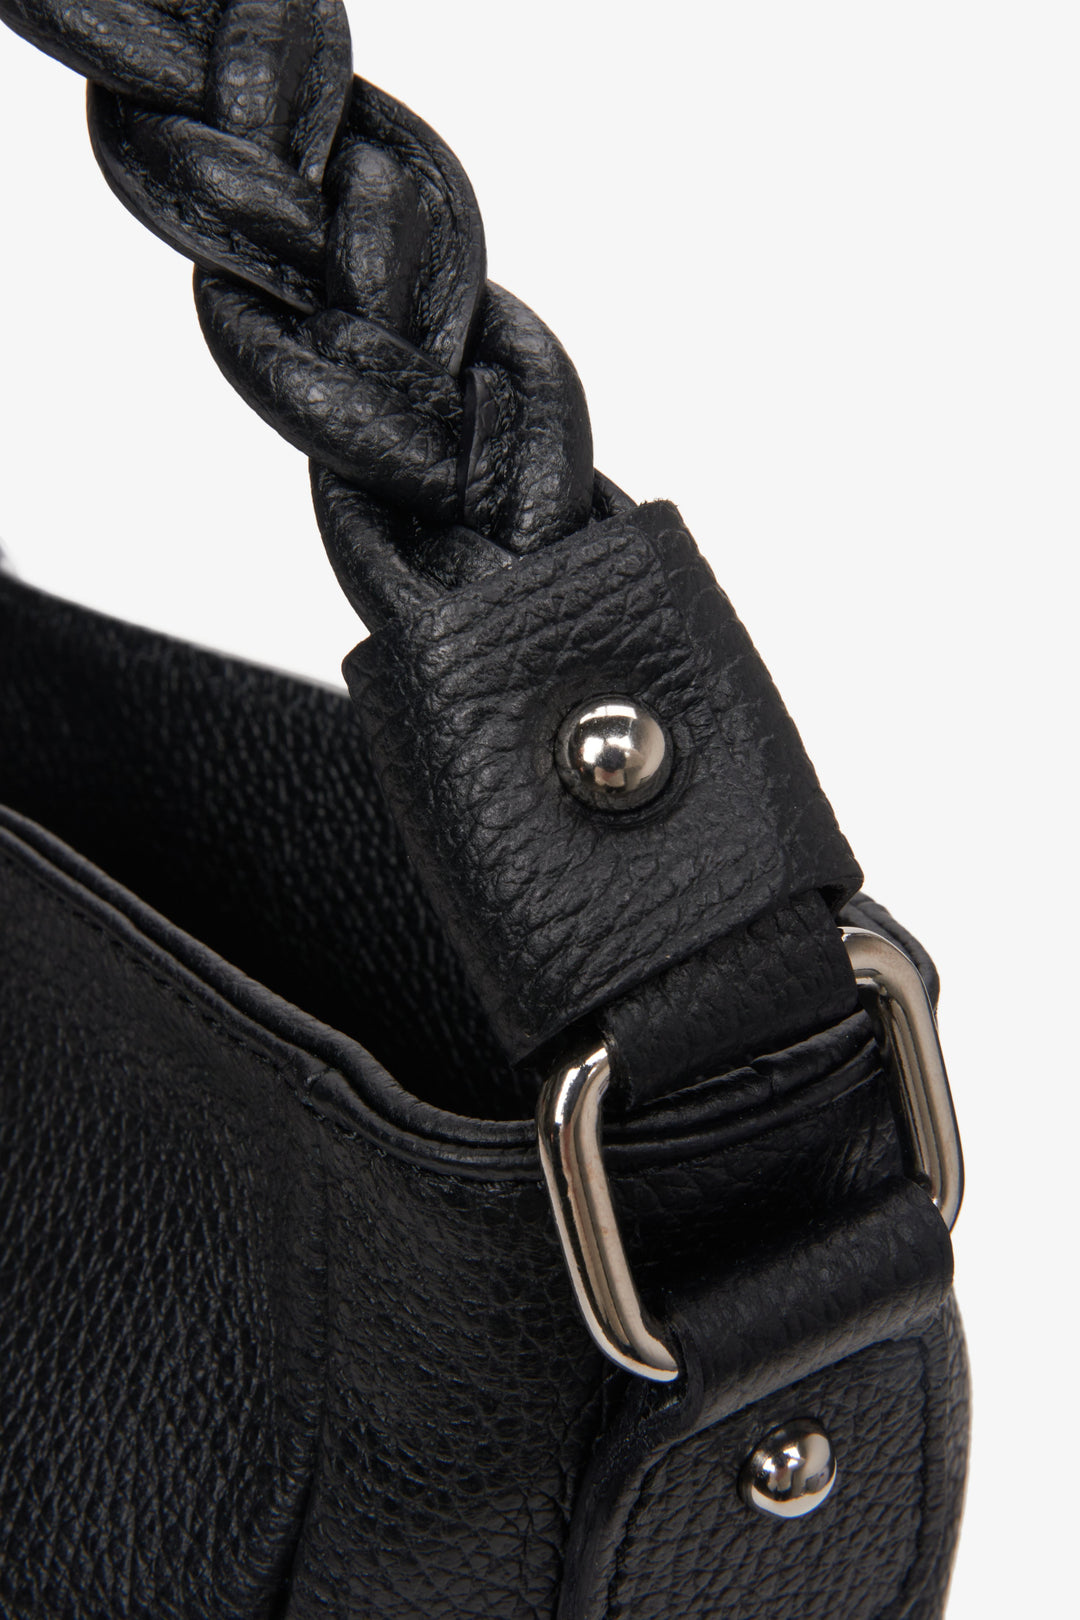 Women's black handbag/shoulder bag made in Italy - close up on details.